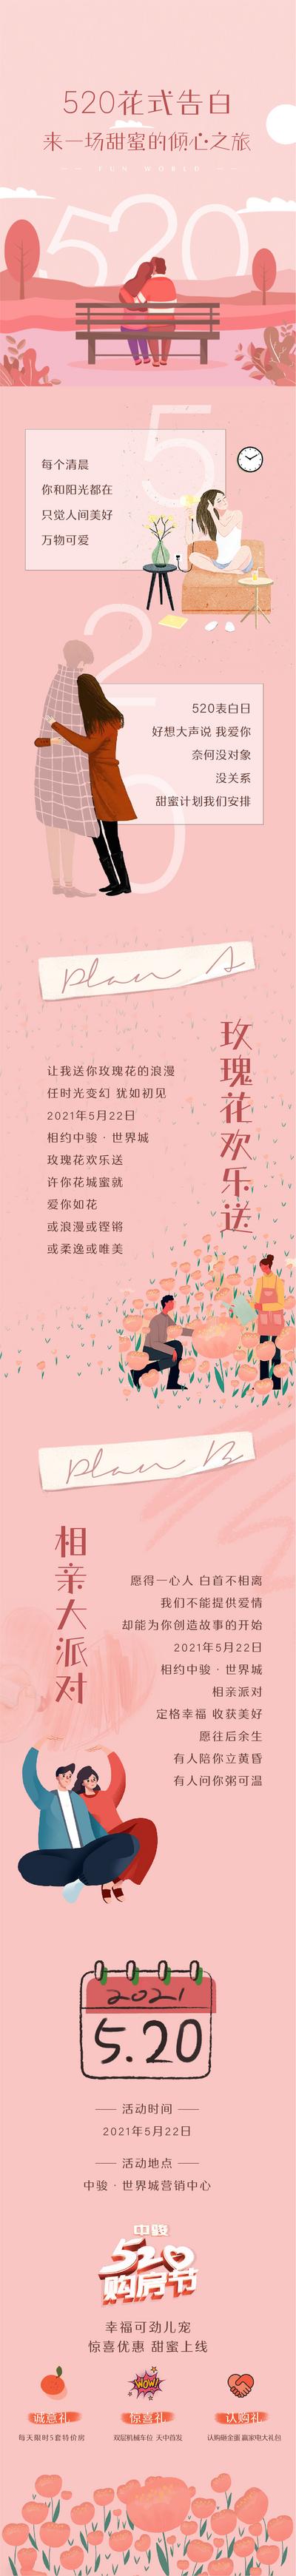 南门网 专题设计 长图 房地产 公历节日 520 情人节 暖场 活动 告白 浪漫 粉色